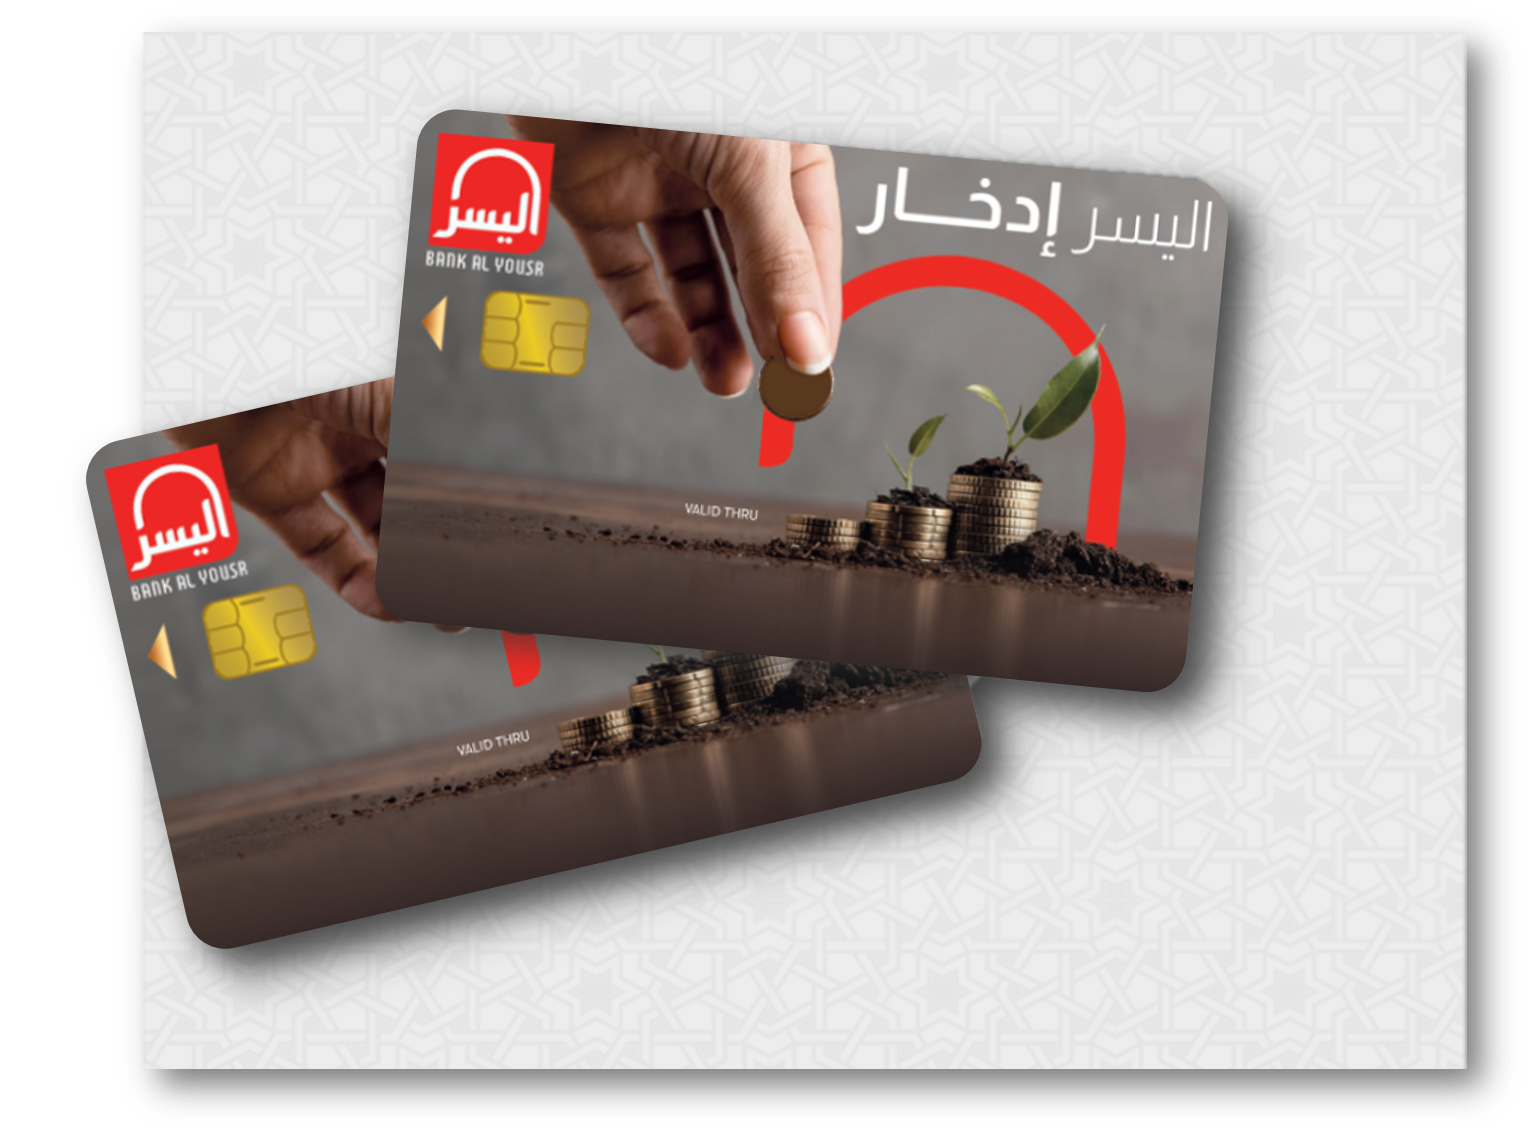 البطاقة البنكية  اليسر ادخار